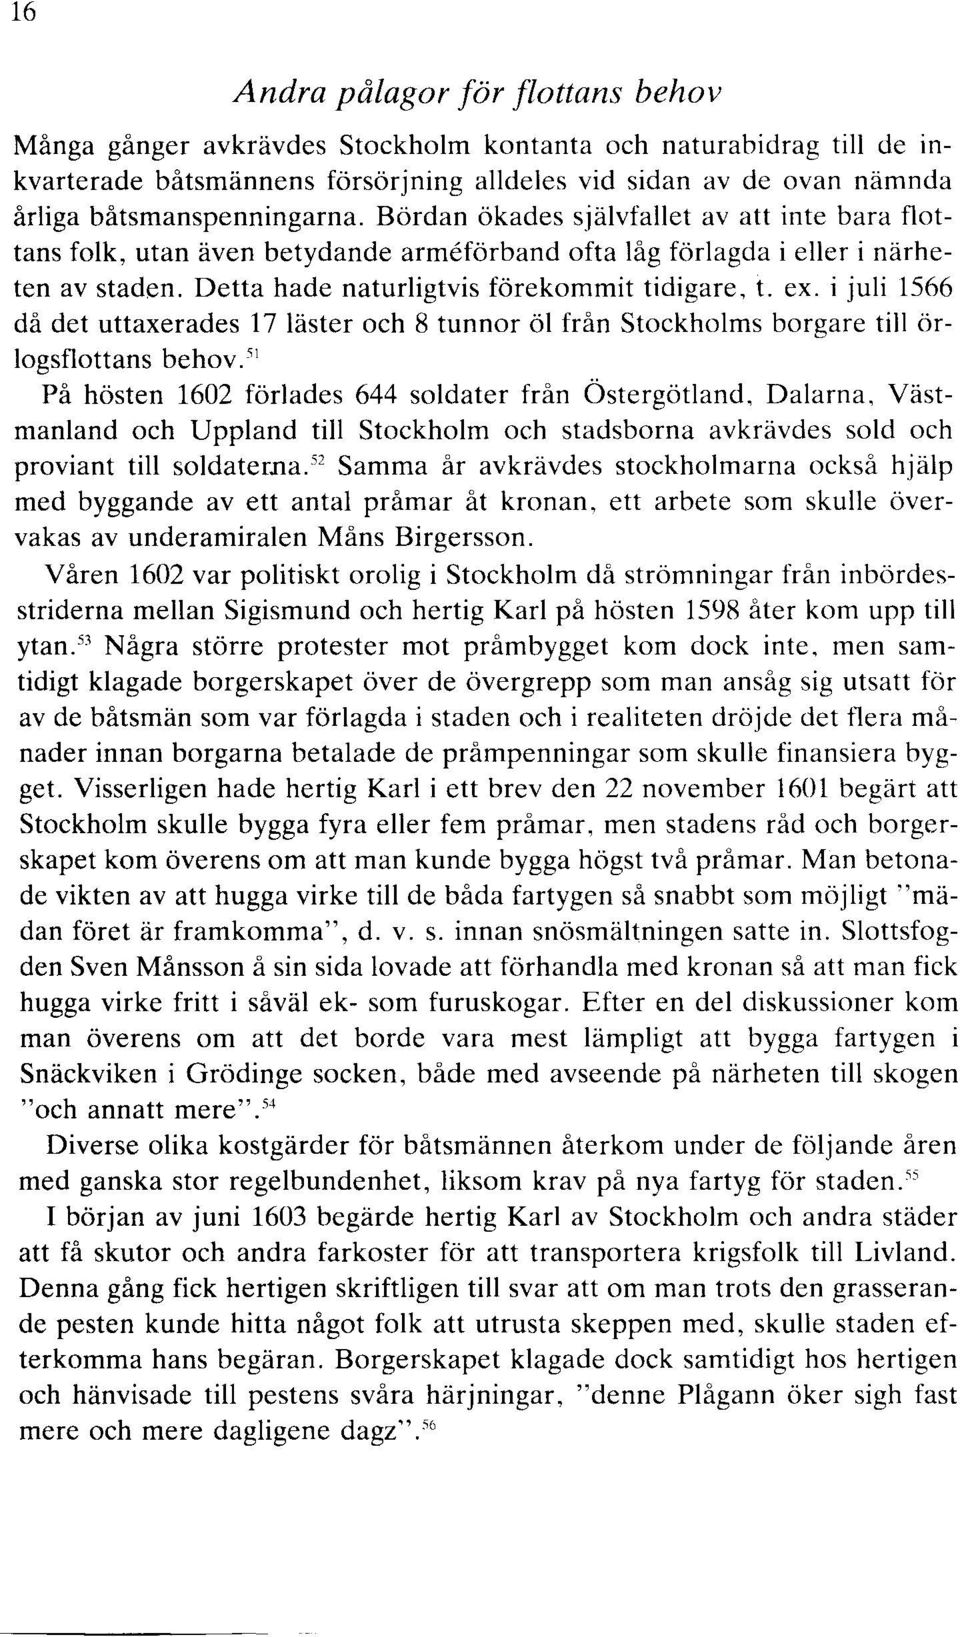 Detta hade naturligtvis förekommit tidigare, t. ex. i juli 1566 då det uttaxerades 17 läster och 8 tunnor öl från Stockholms borgare till örlogsflottans behov.